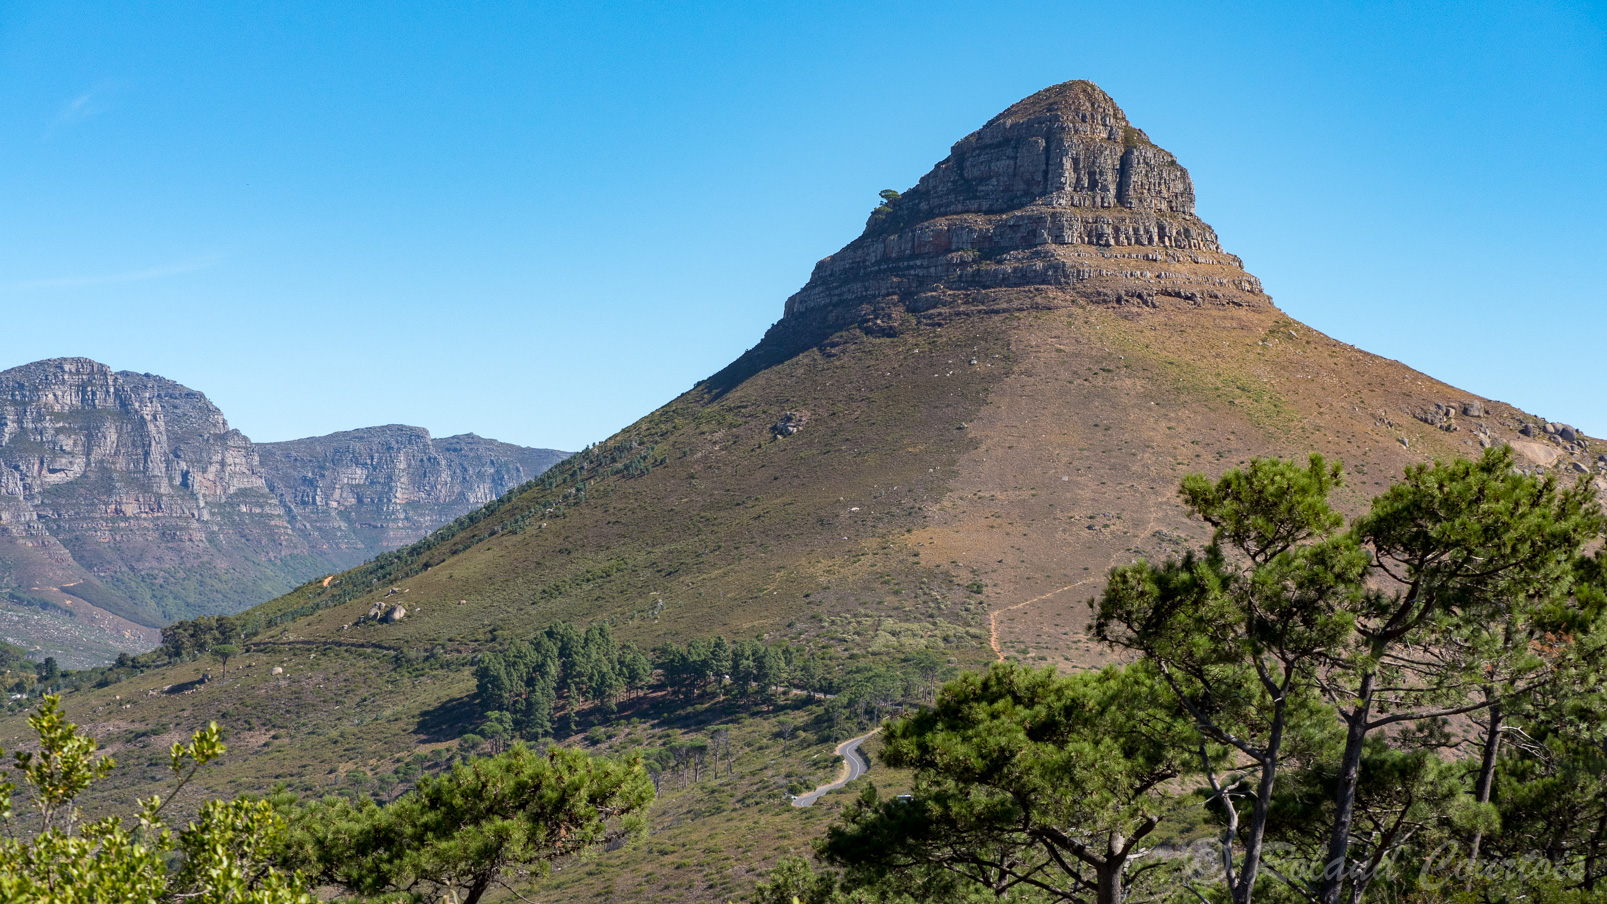 La montagne "Lion's Head" domine la ville du Cap.